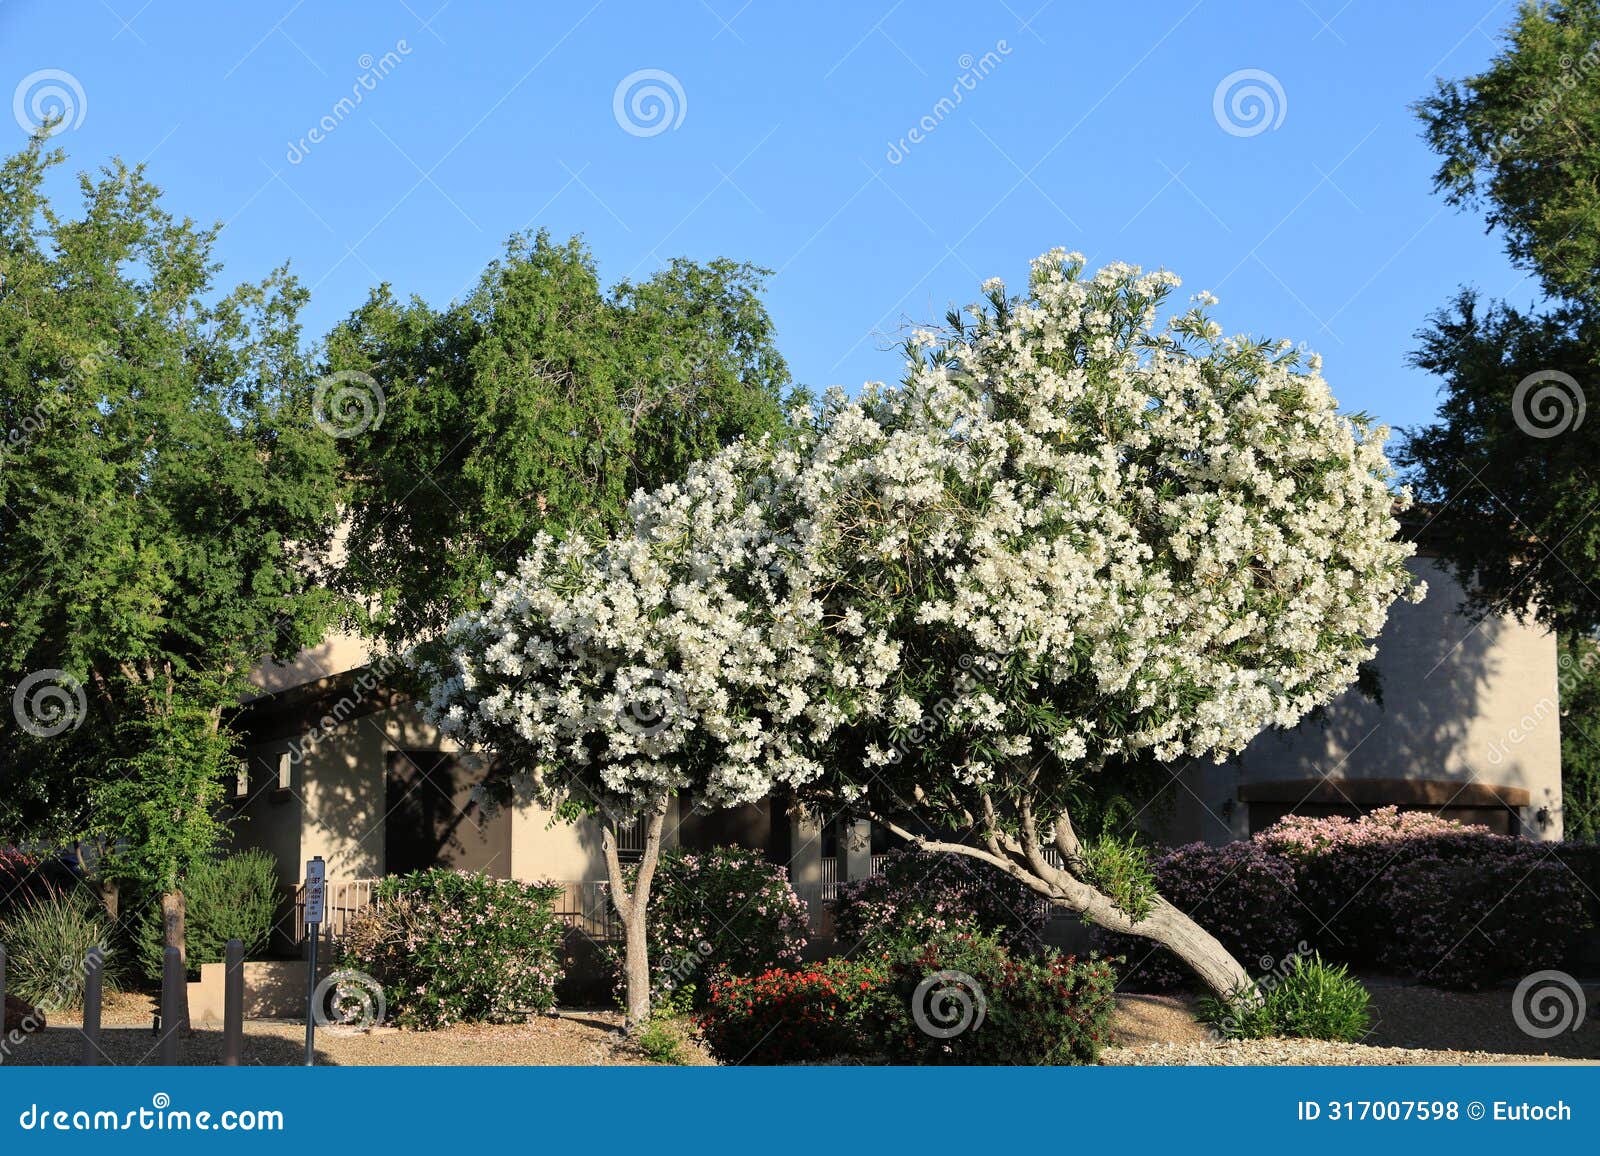 white oleander in full bloom in arizona spring